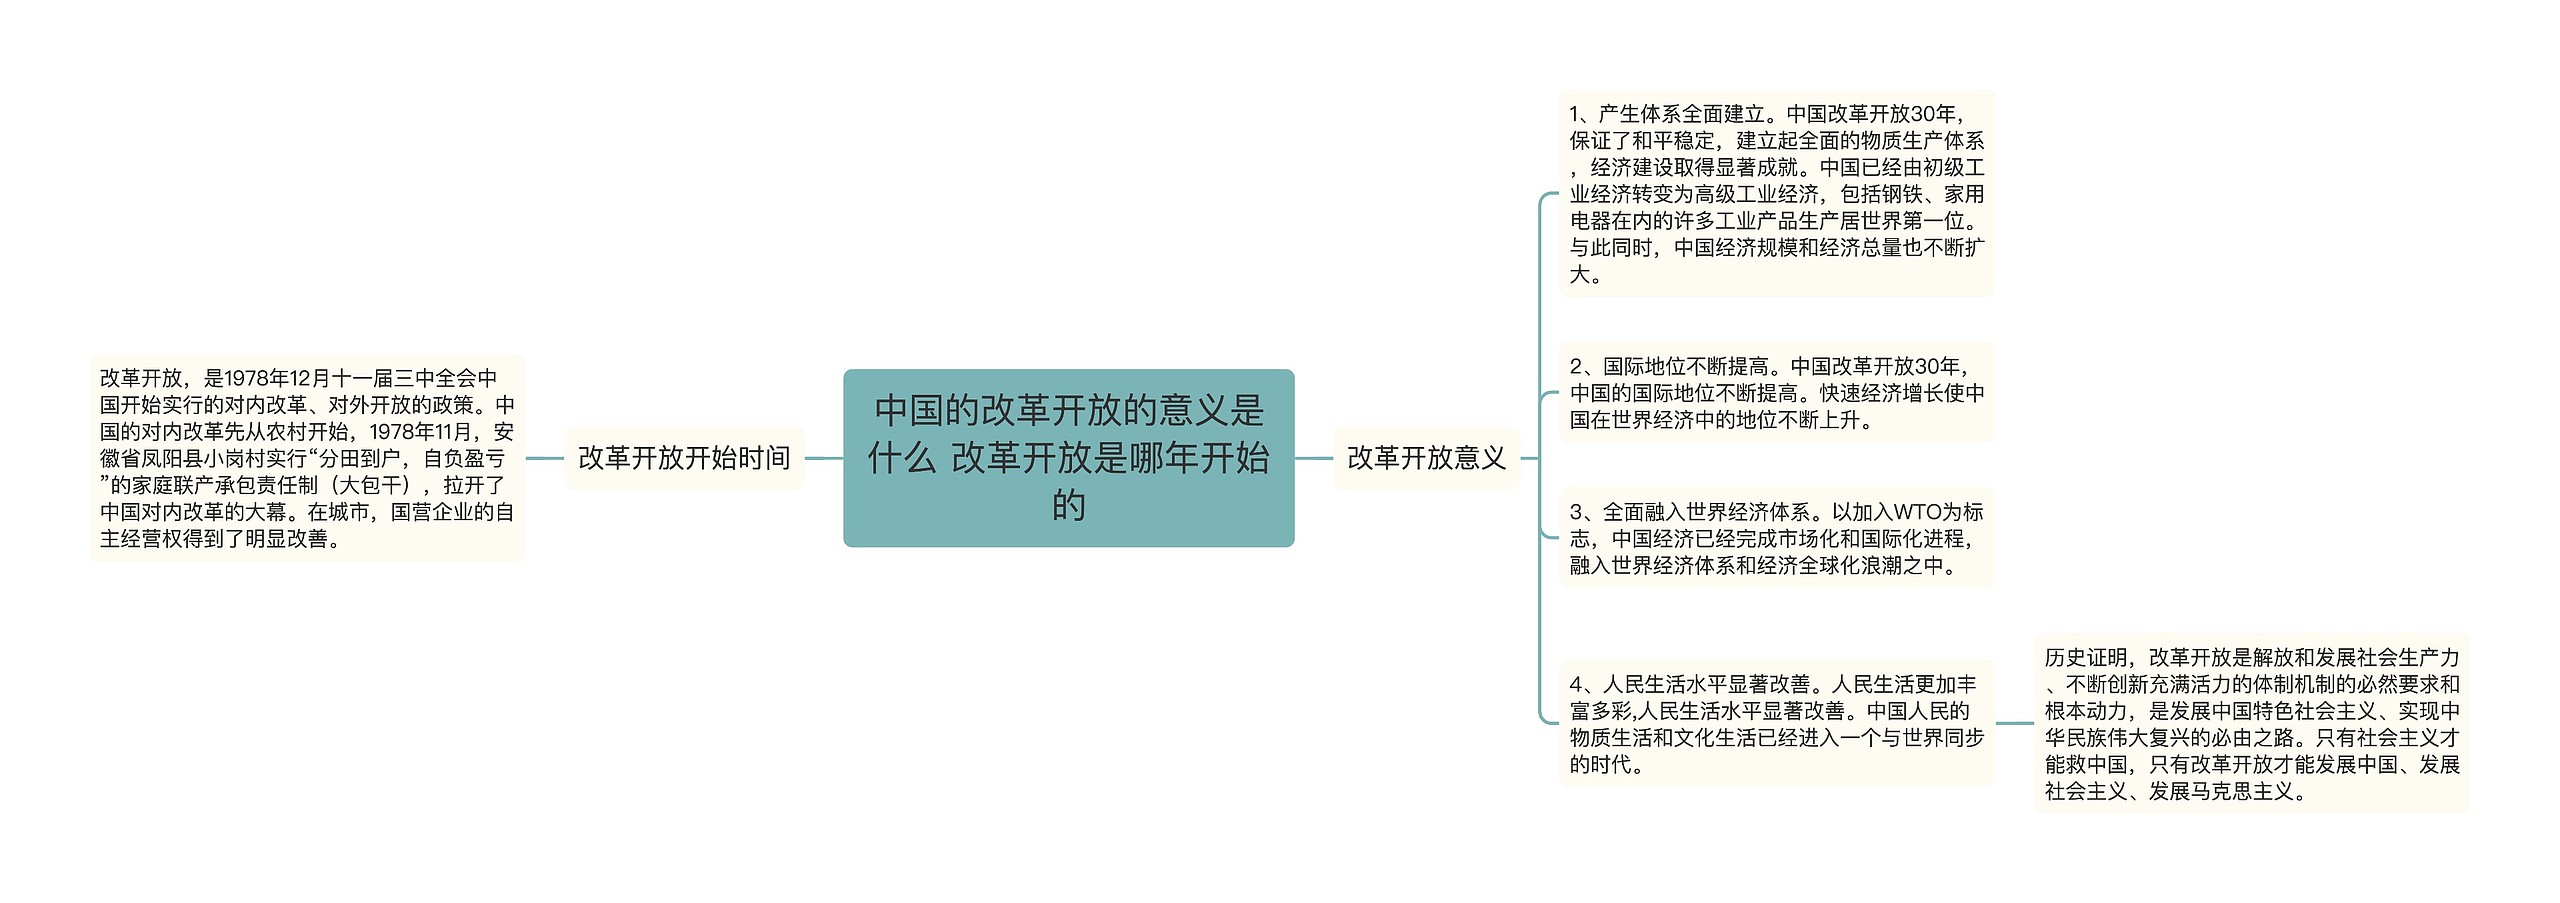 中国的改革开放的意义是什么 改革开放是哪年开始的思维导图